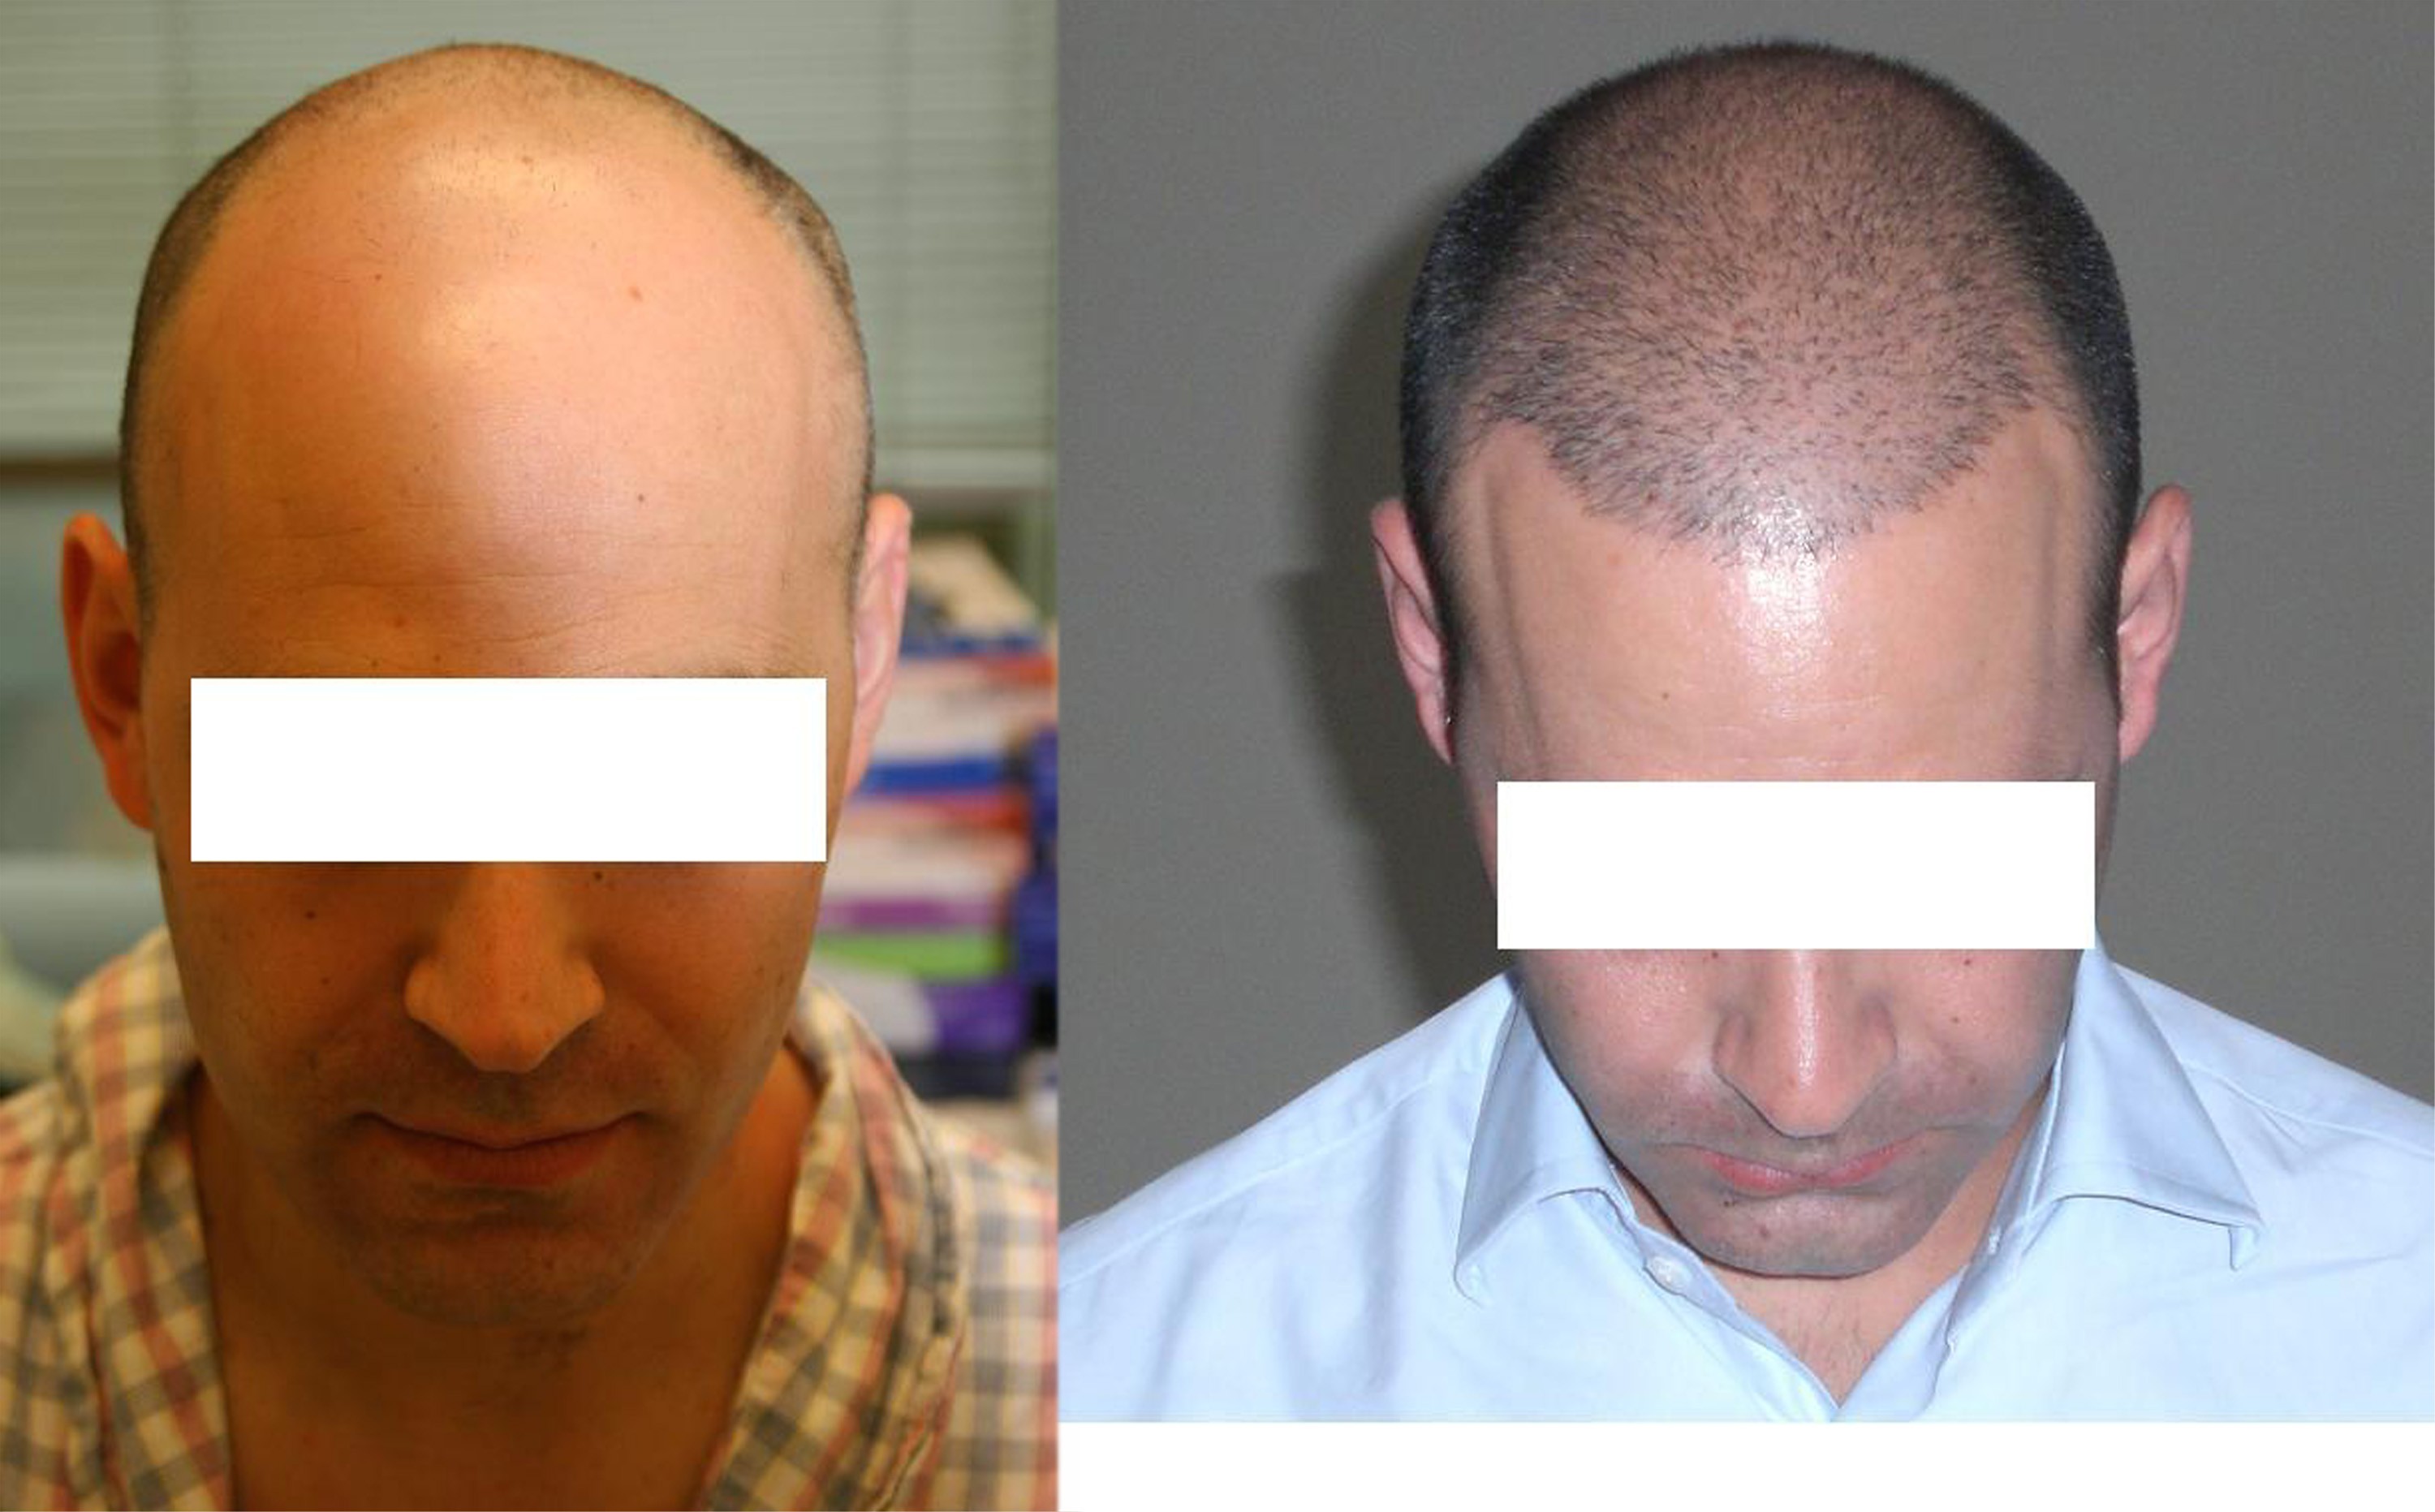 Центр пересадки волос. Реал транс Хаер до и после. До и после пересадки волос. Трансплантация волос с затылка. Голова до и после пересадки волос.